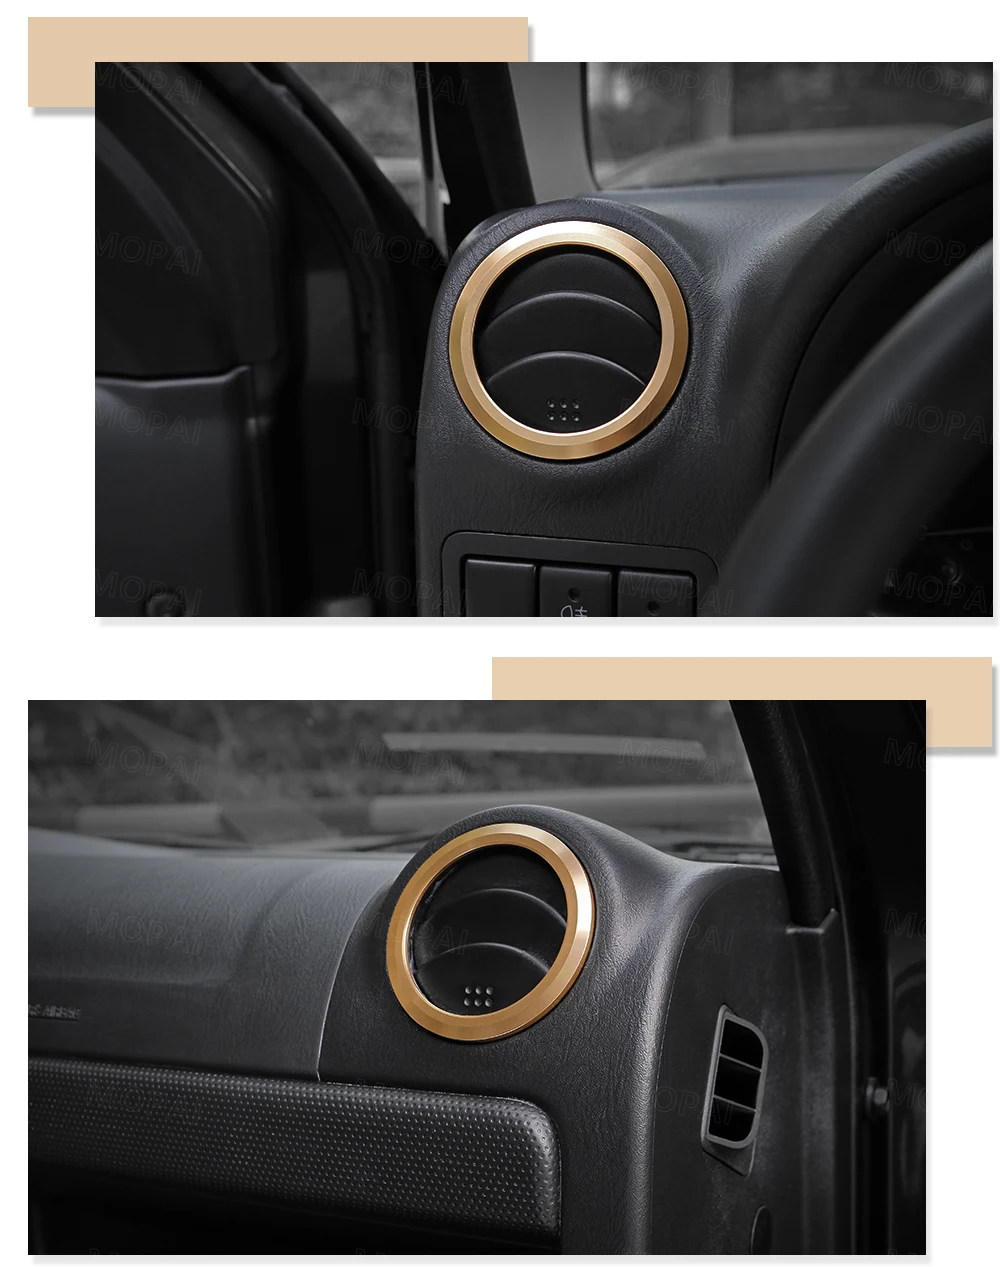 MOPAI интерьерные молдинги для автомобиля, кондиционер, вентиляционное отверстие, декоративная крышка, кольцо, наклейки для Suzuki Jimny, аксессуары на 2007